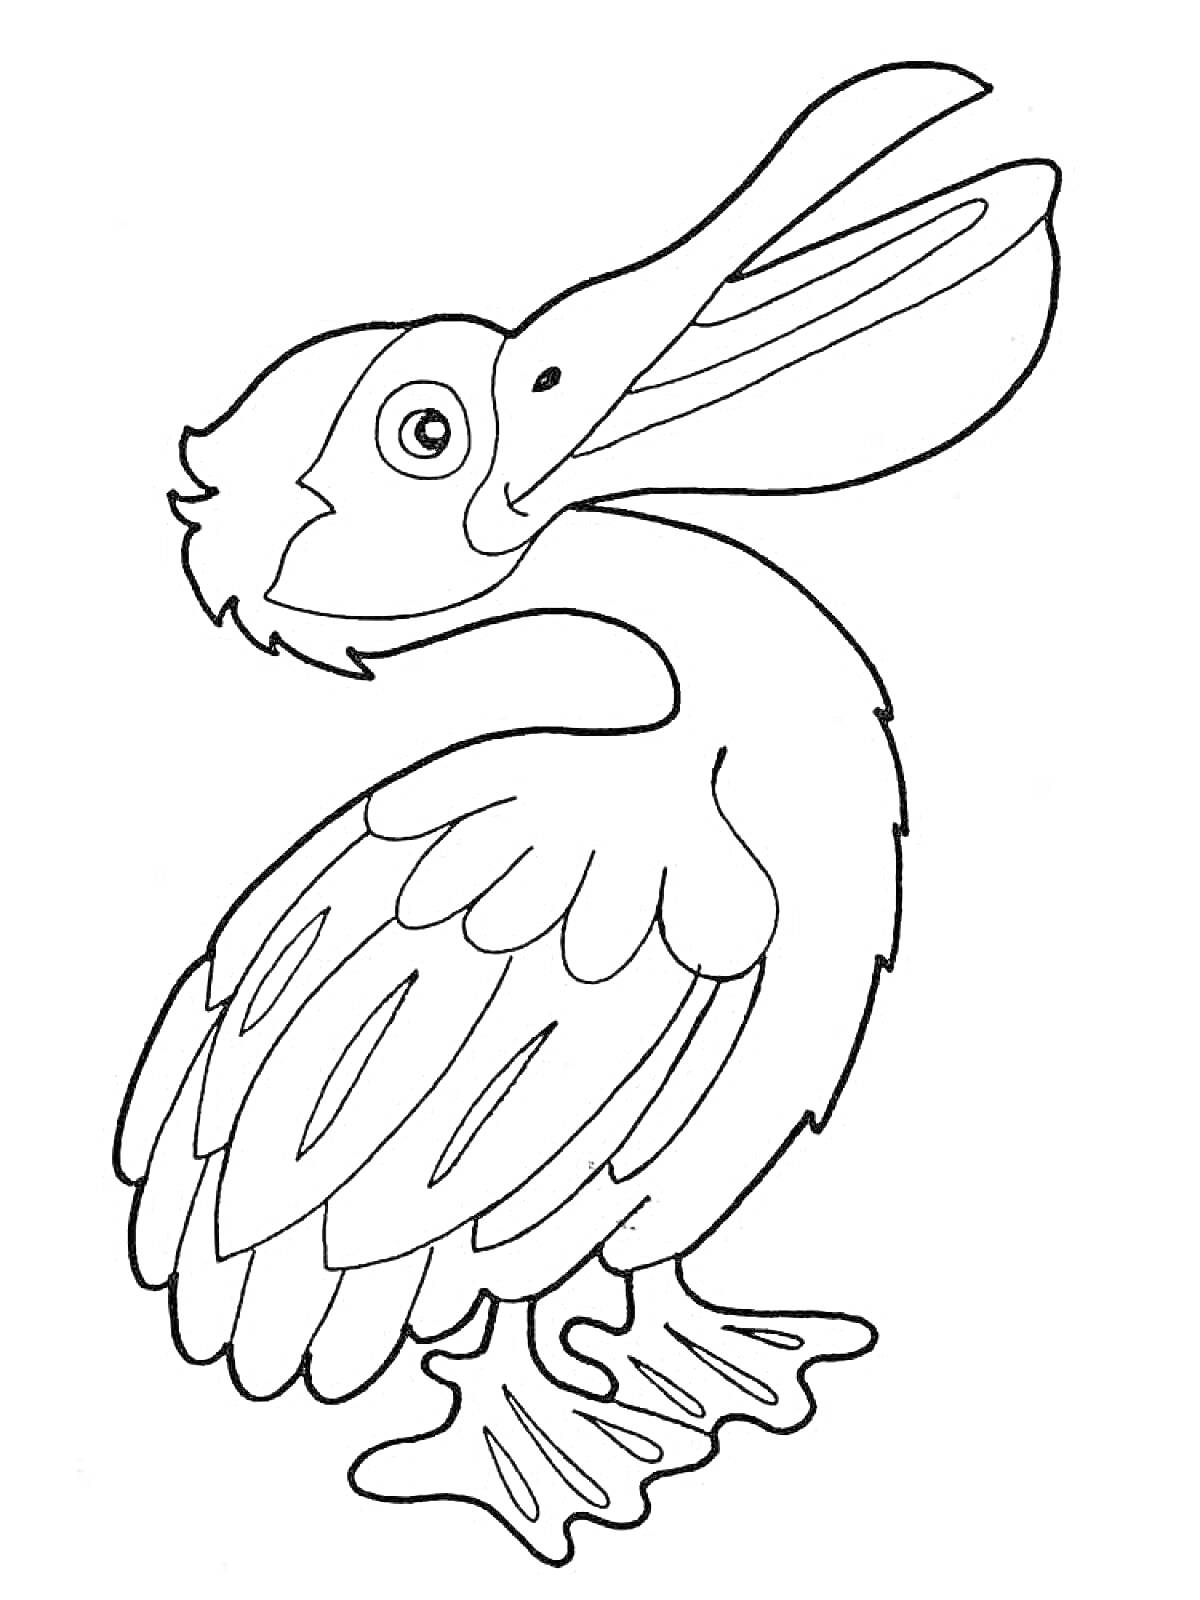 Раскраска Пеликан, стоящий на земле с раскрытым клювом